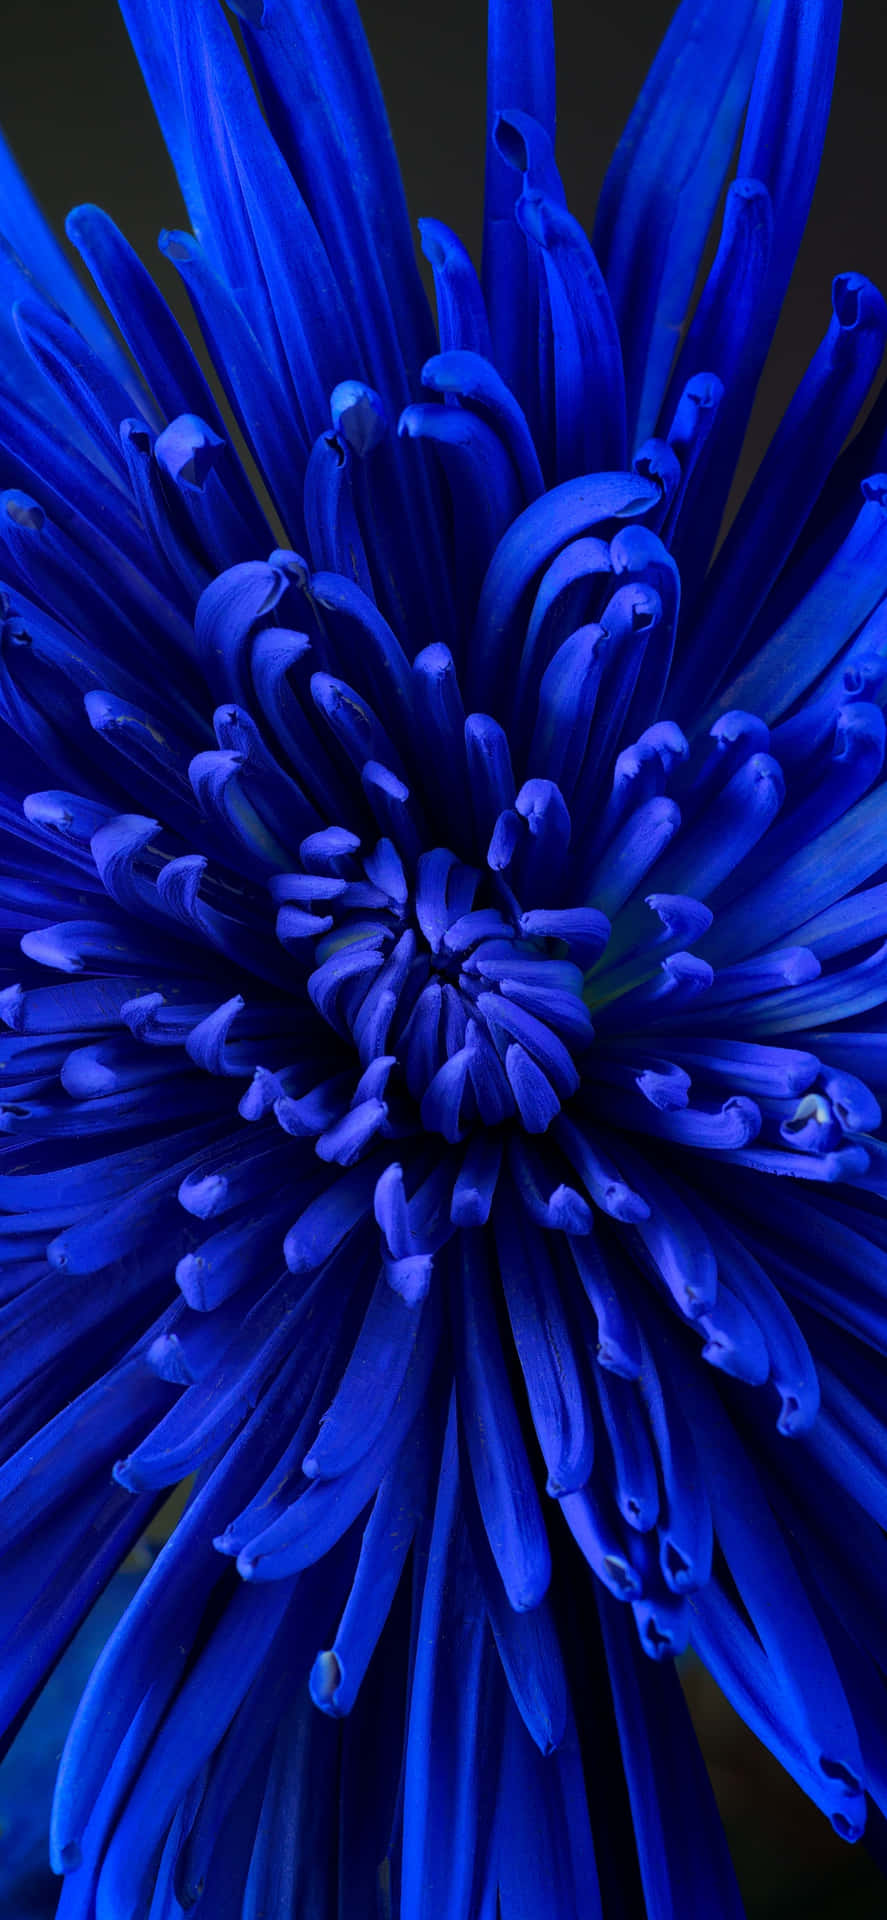 Close-up Blue Chrysanthemum Flower Wallpaper